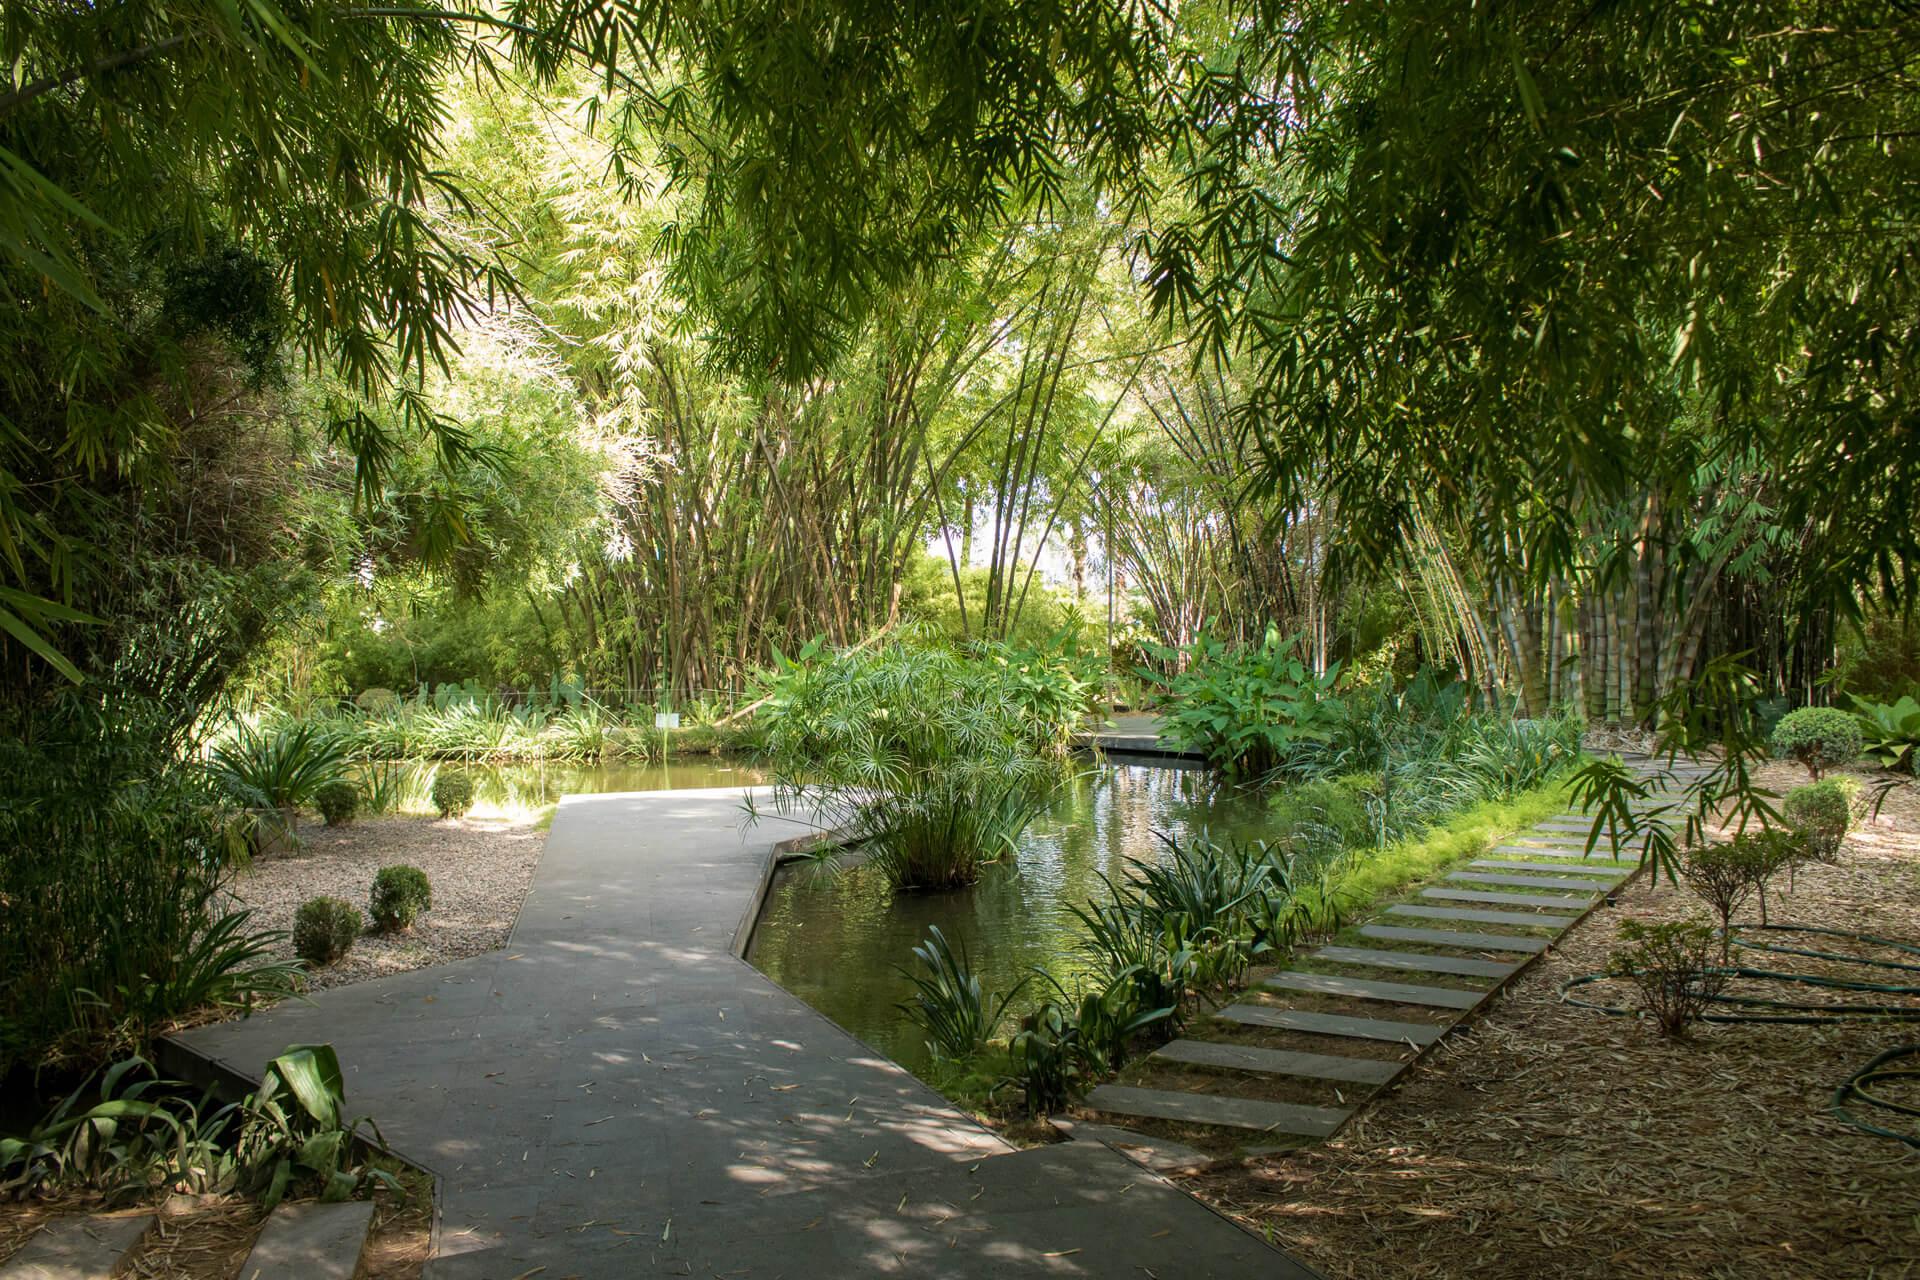 $!Incluye La Nación a Jardín Botánico de Culiacán como uno de los 7 más lindos del mundo